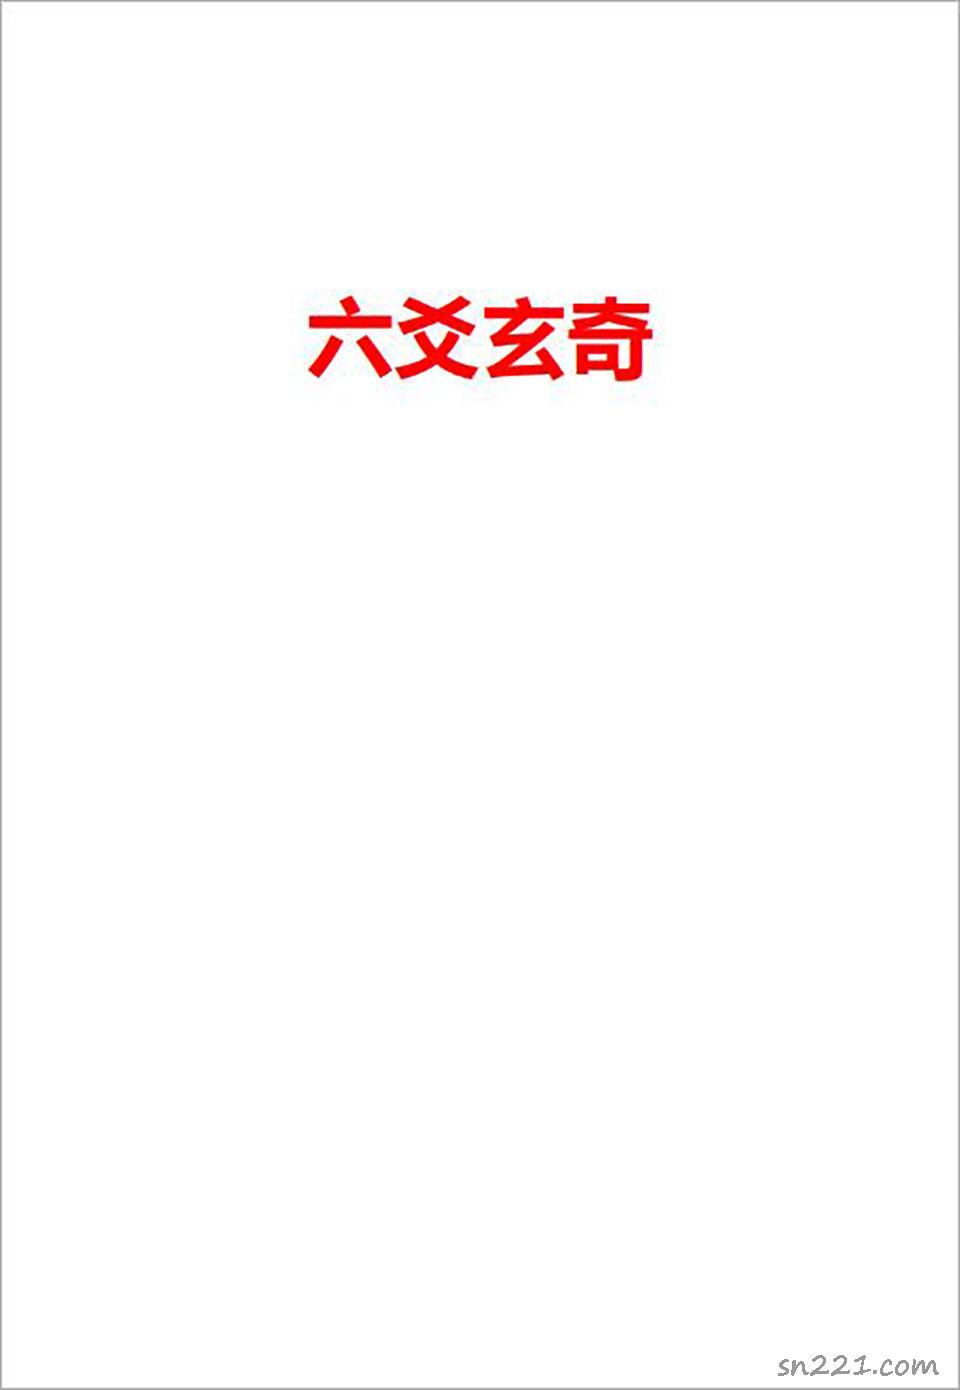 六爻玄奇網絡版308頁.pdf